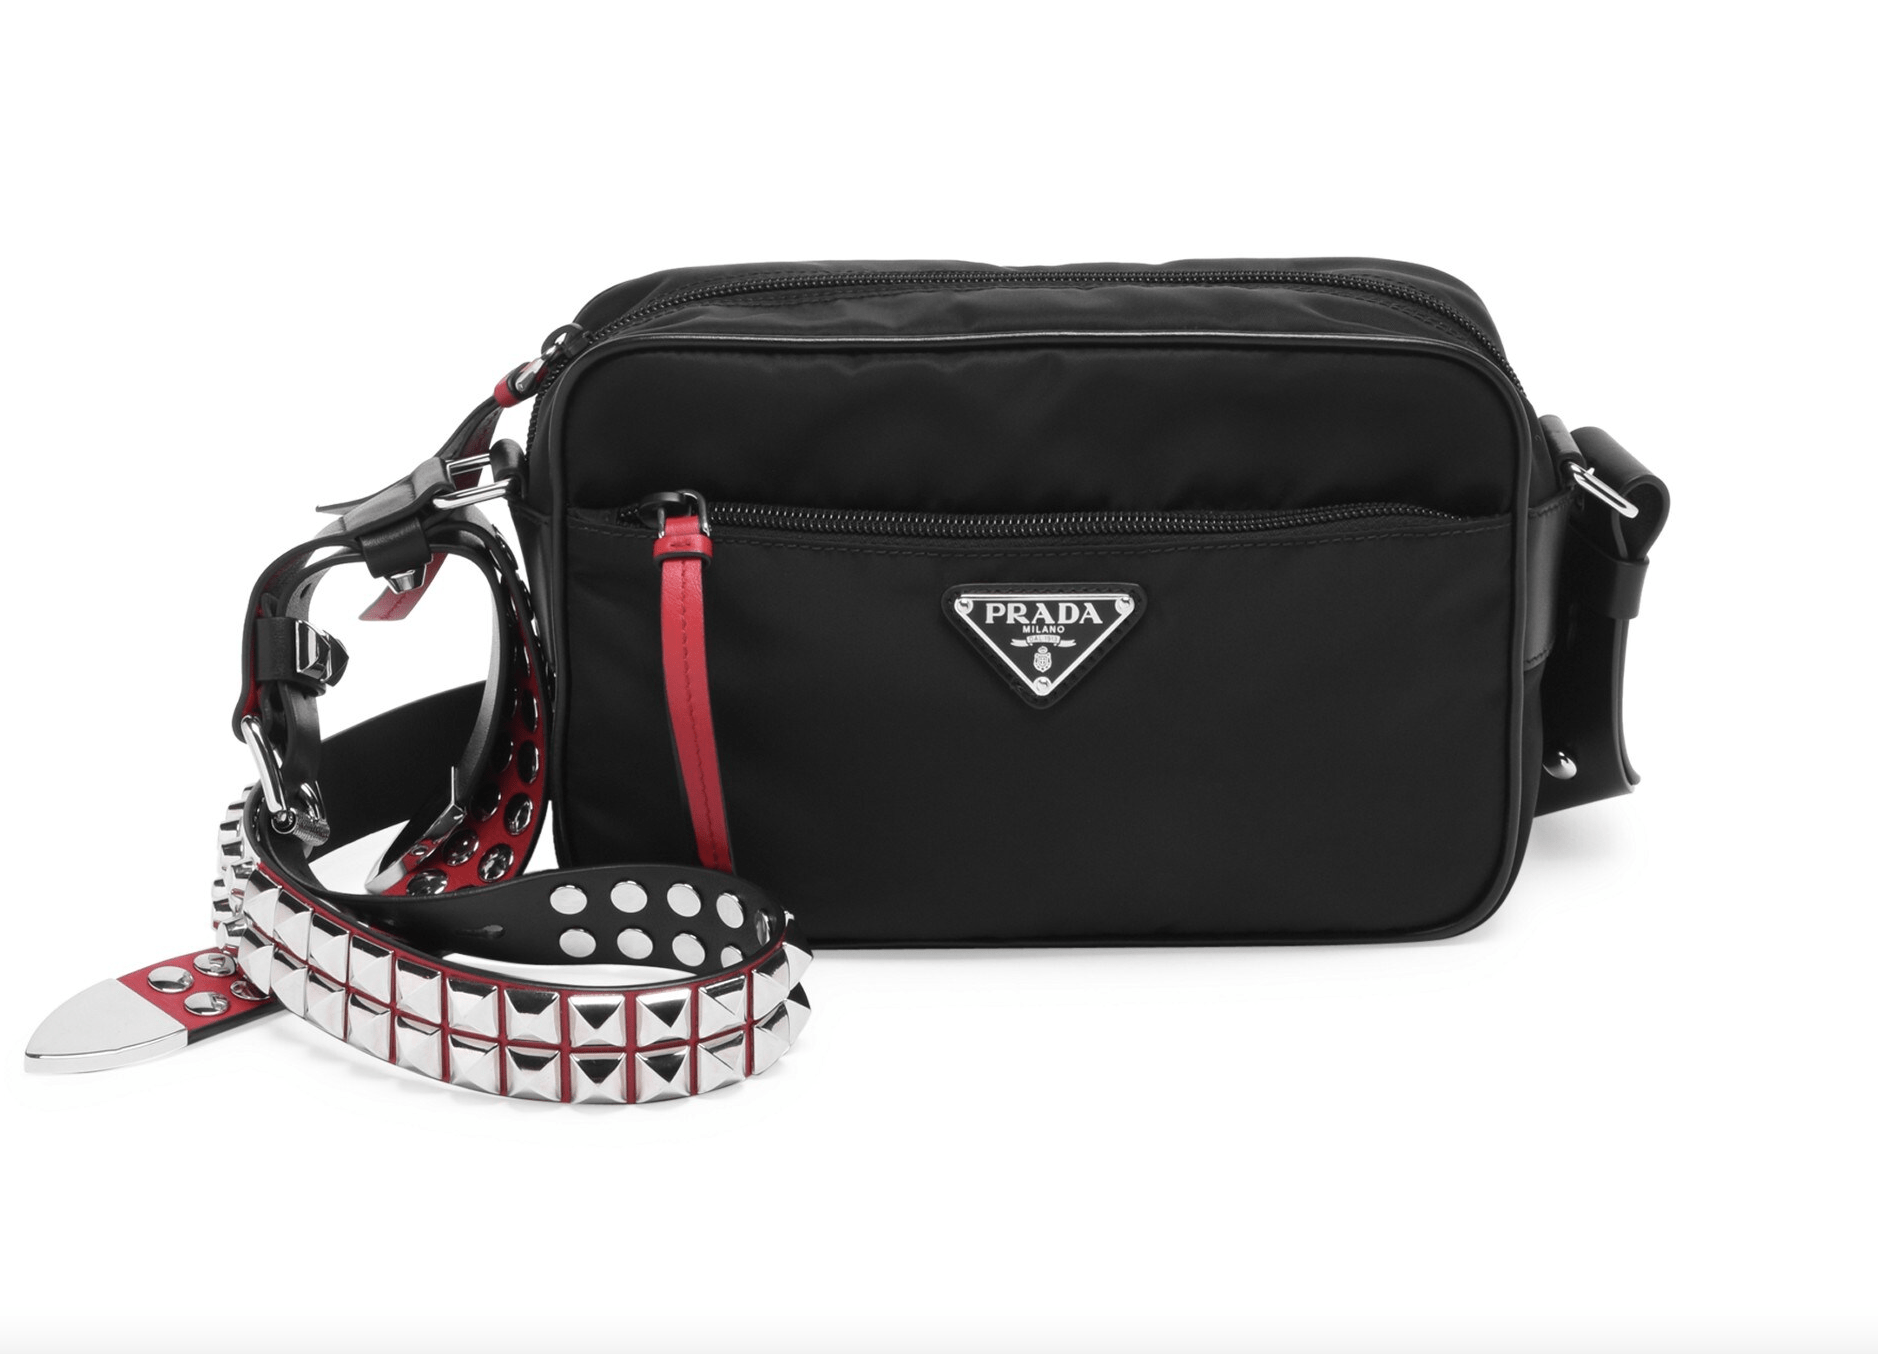 Prada New Vela Studded Nylon Bag in Black and Red - The Revury